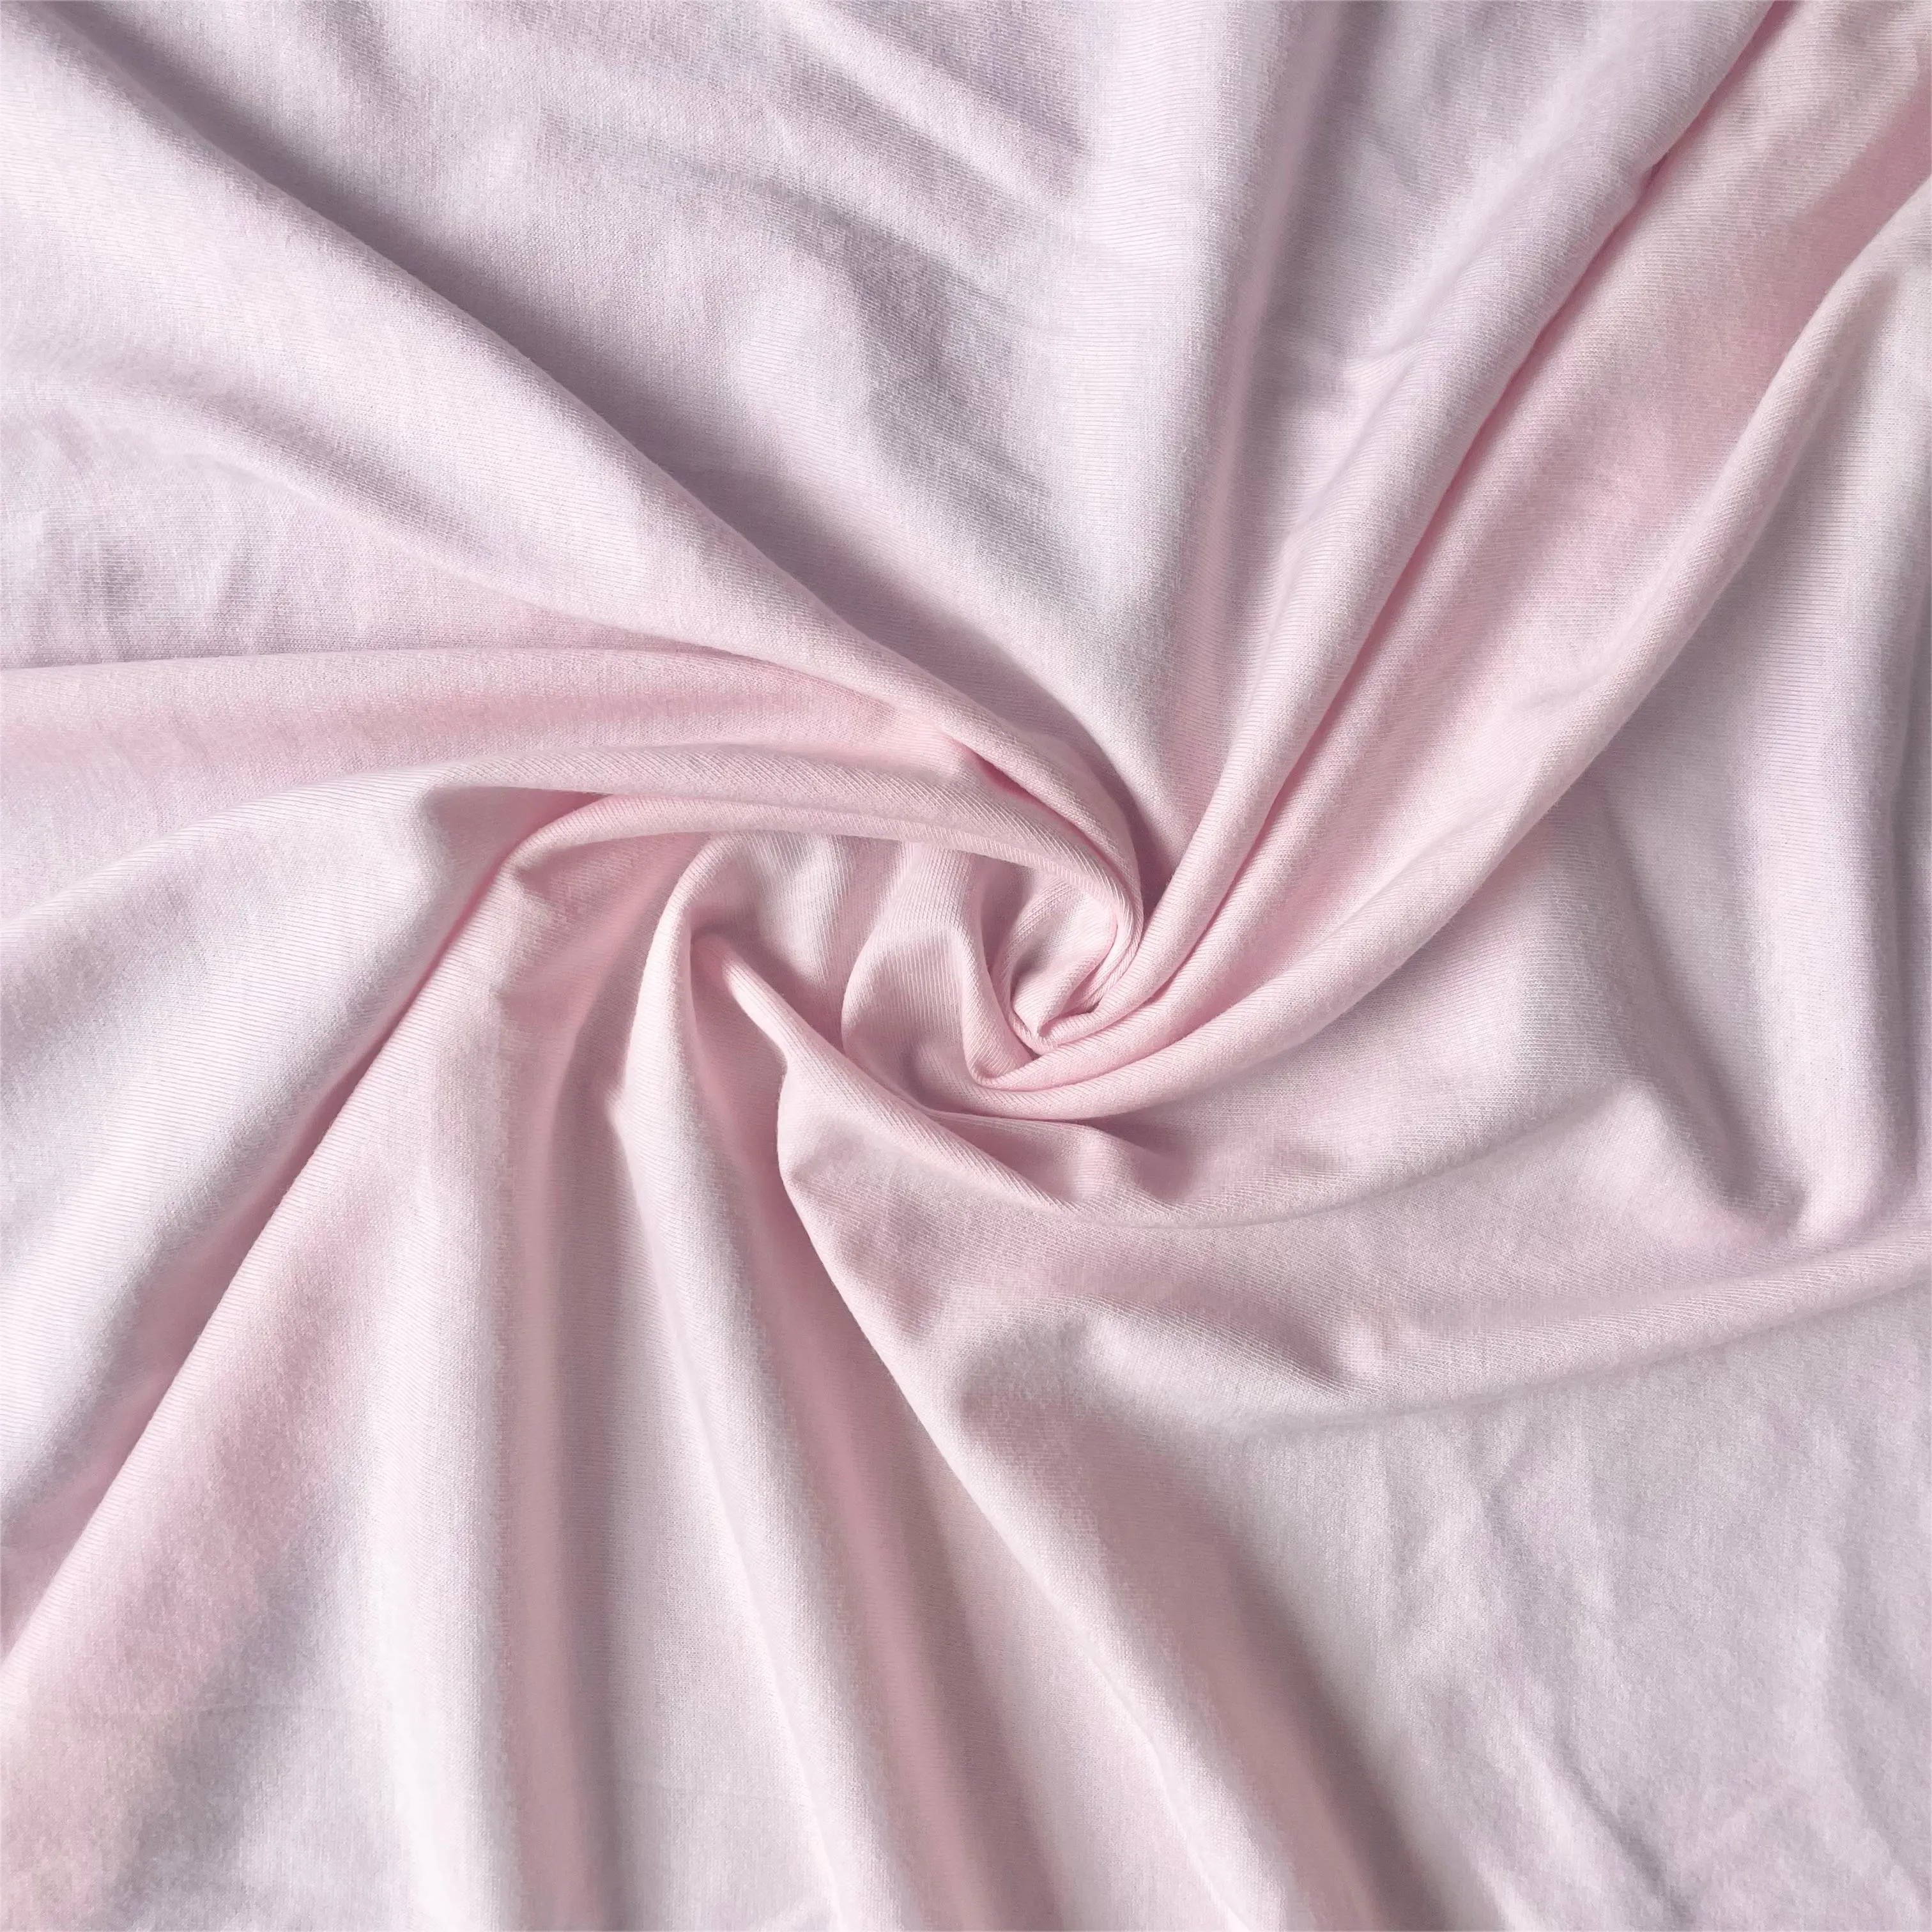 100% coton peigné haute qualité simple jersey tissu enfants vêtements couches tissu doux pour la peau T-shirt POLO chemise sous-vêtements